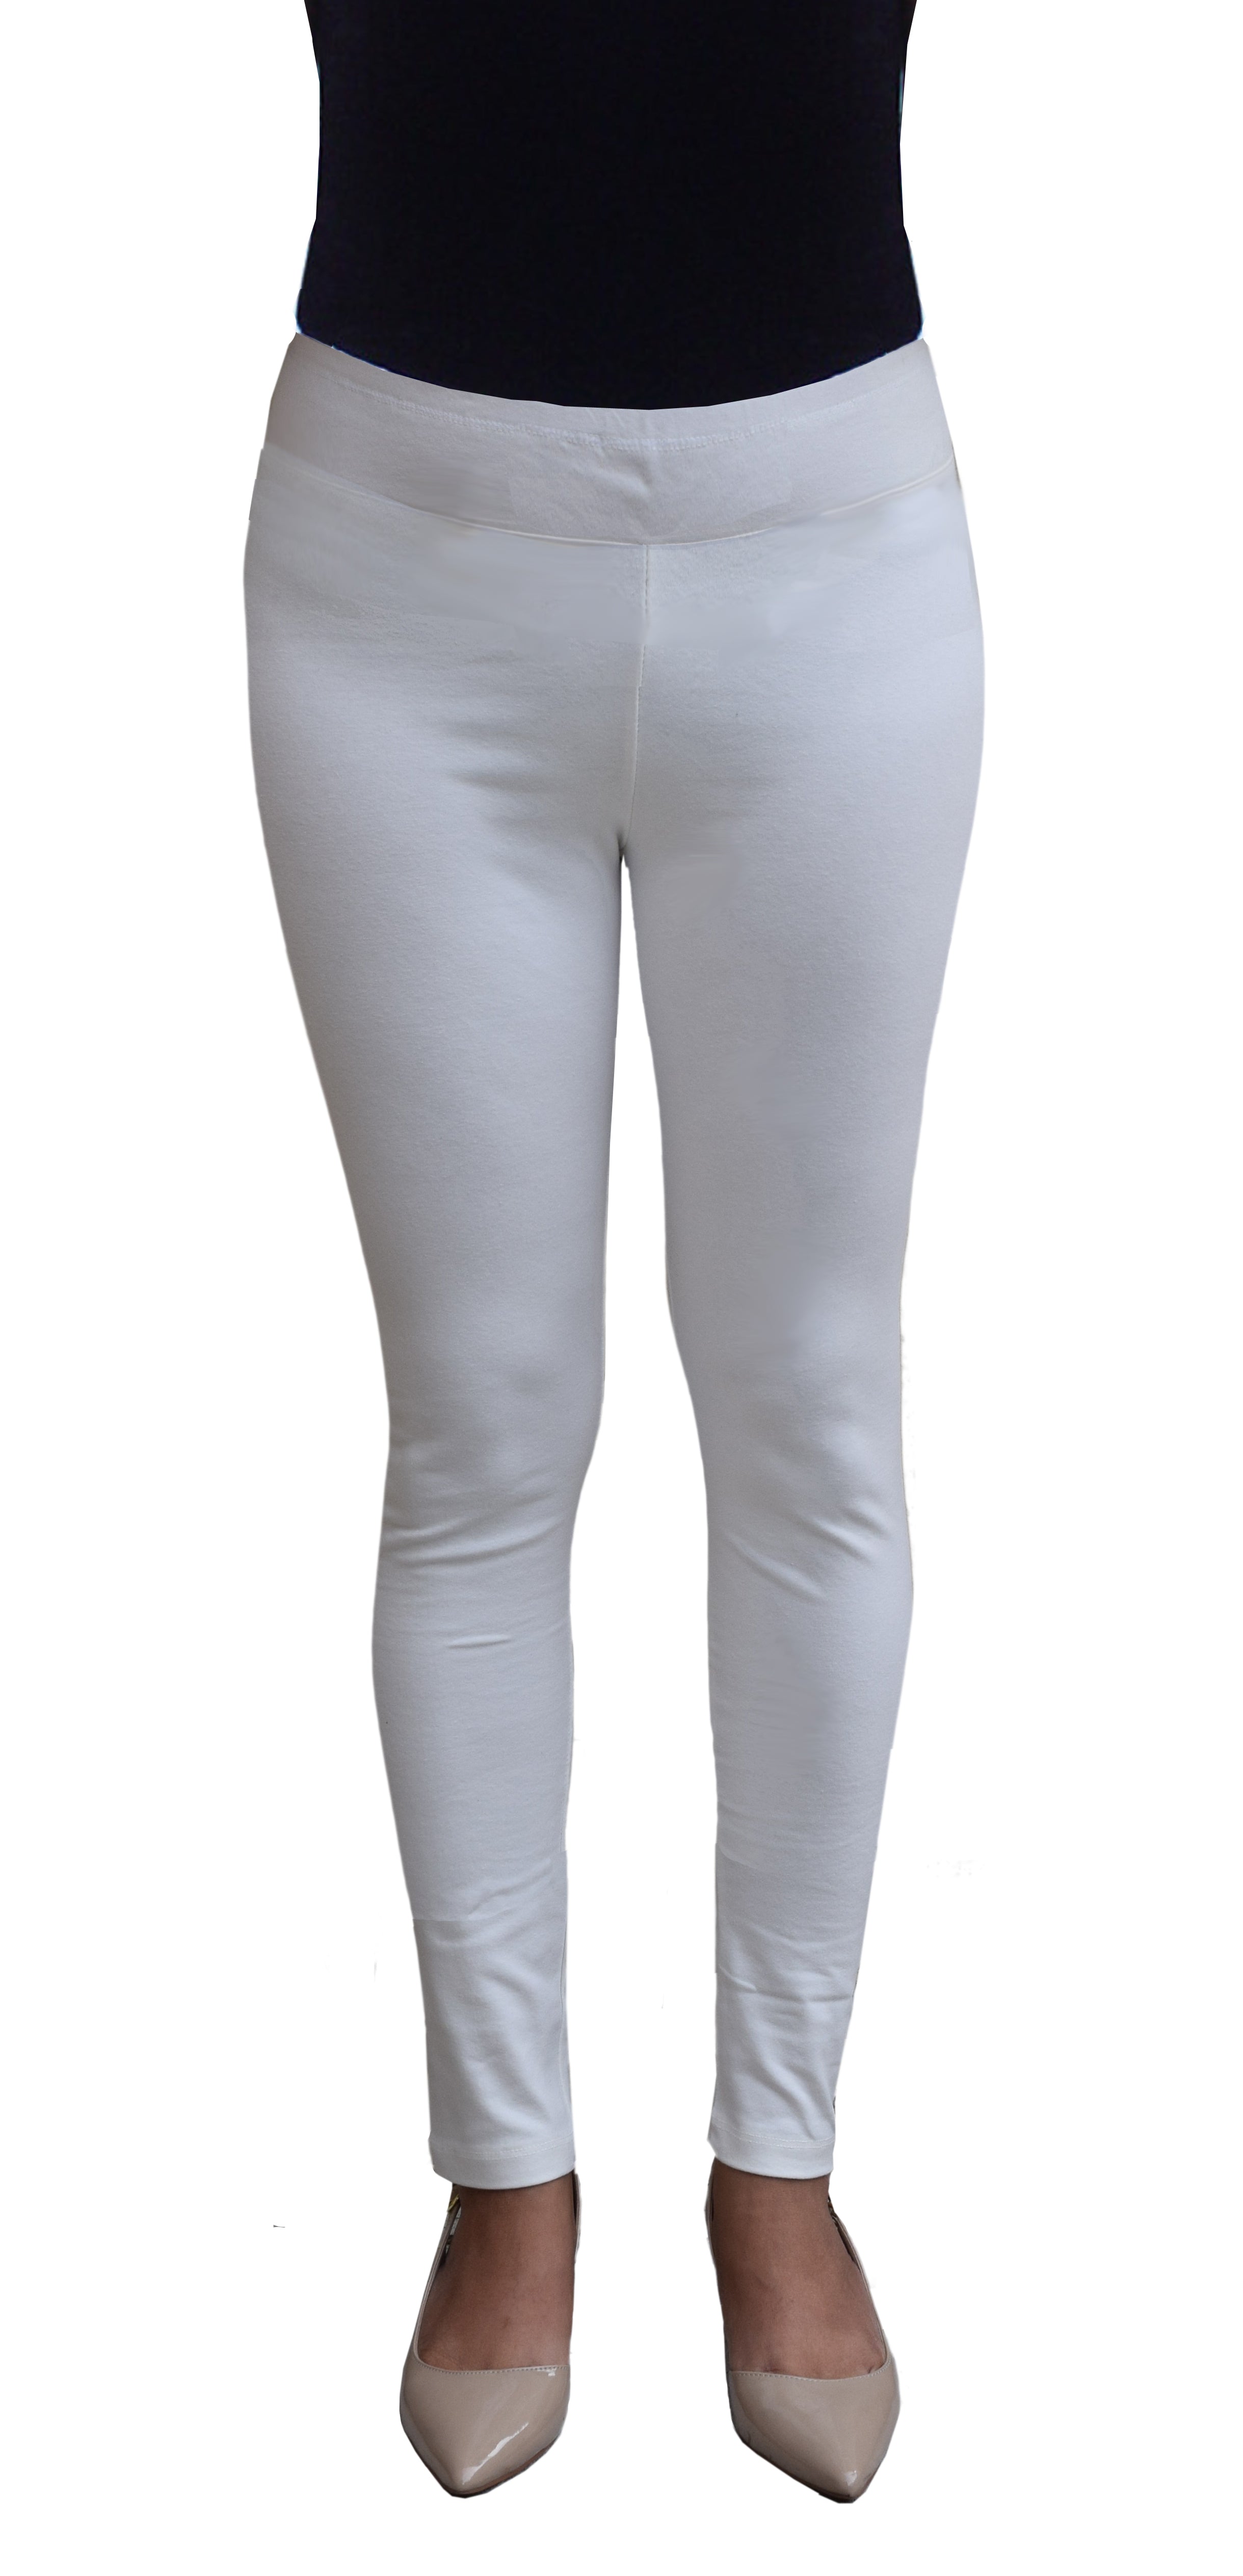 Cotton Legging Leggings Blend Pants Slex Womens Yoga Full Length Stretchable  Her | eBay